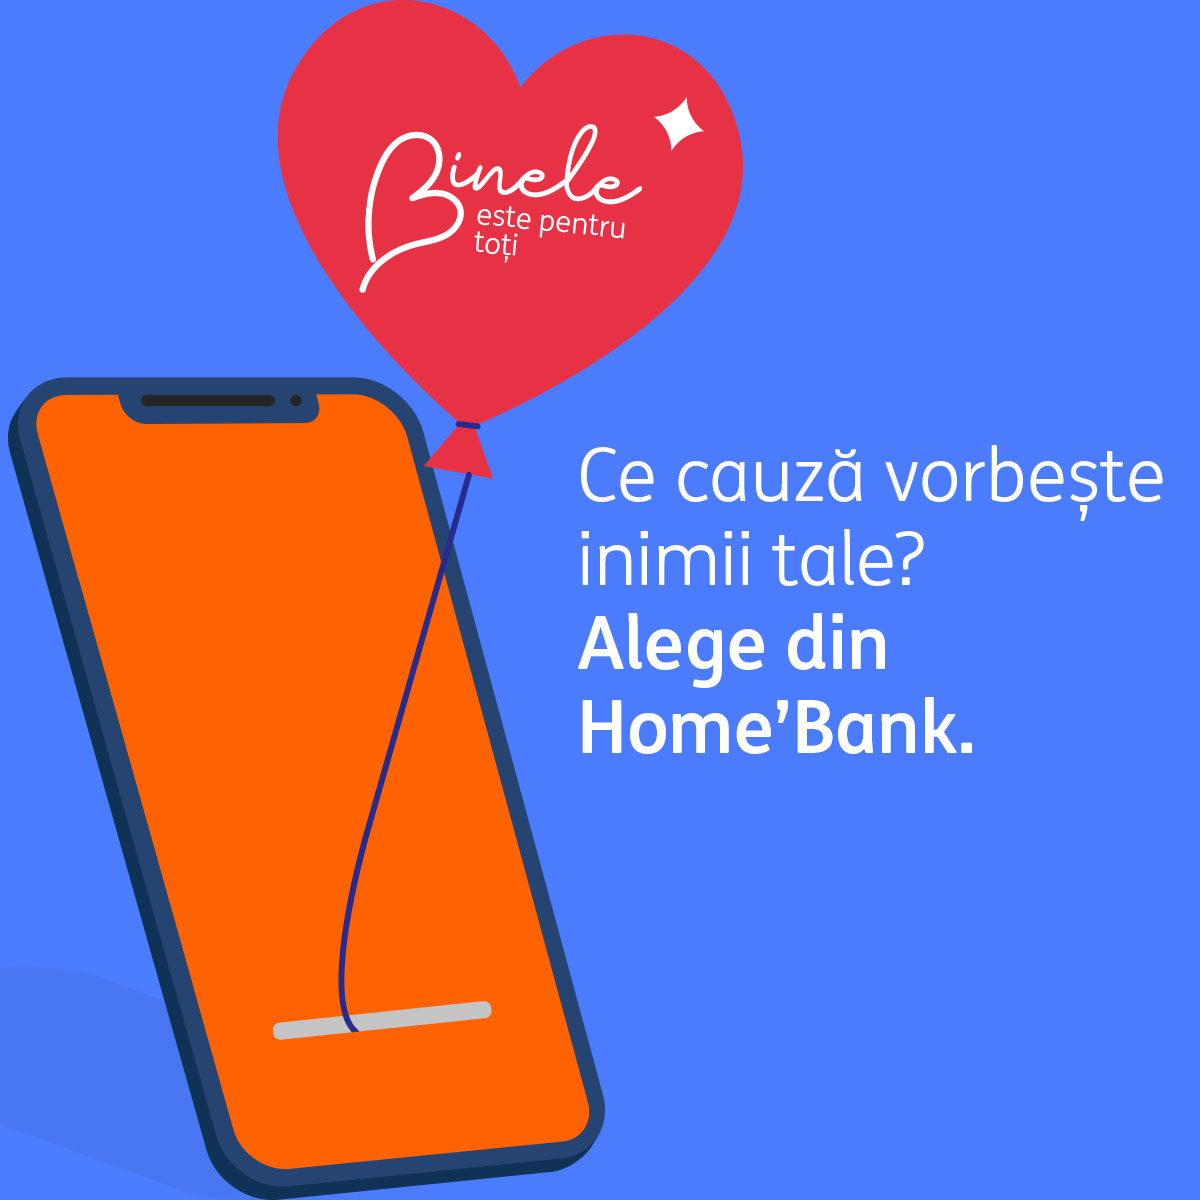 16 ONG-uri vor fi selectate pentru a primi donații direct în aplicația Home’Bank a ING Bank România